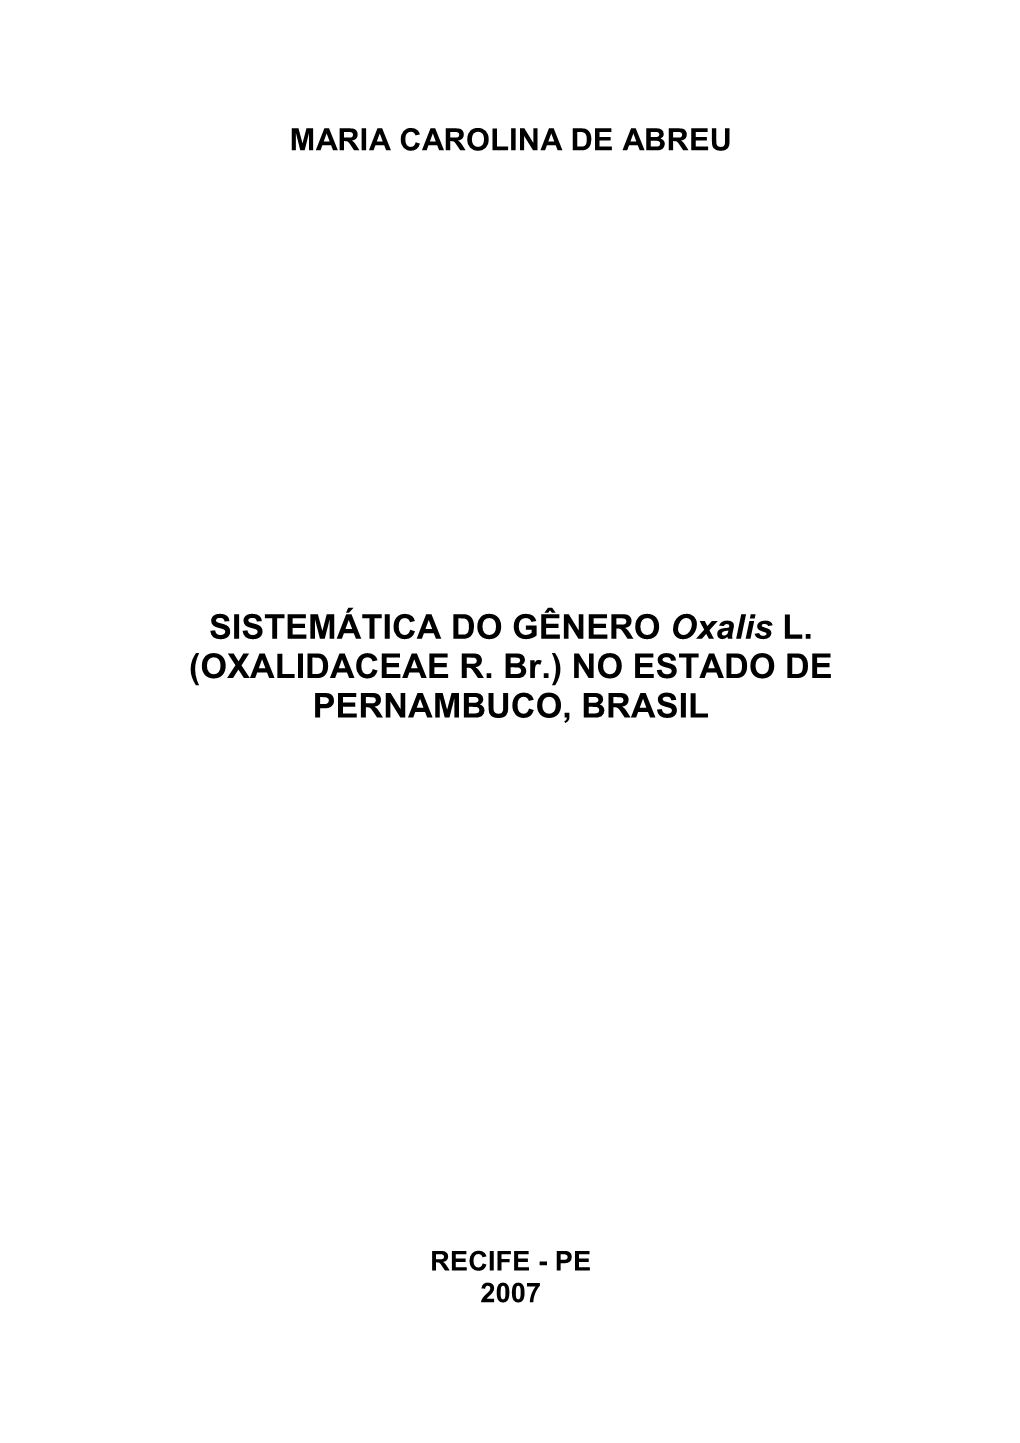 SISTEMÁTICA DO GÊNERO Oxalis L. (OXALIDACEAE R. Br.) NO ESTADO DE PERNAMBUCO, BRASIL